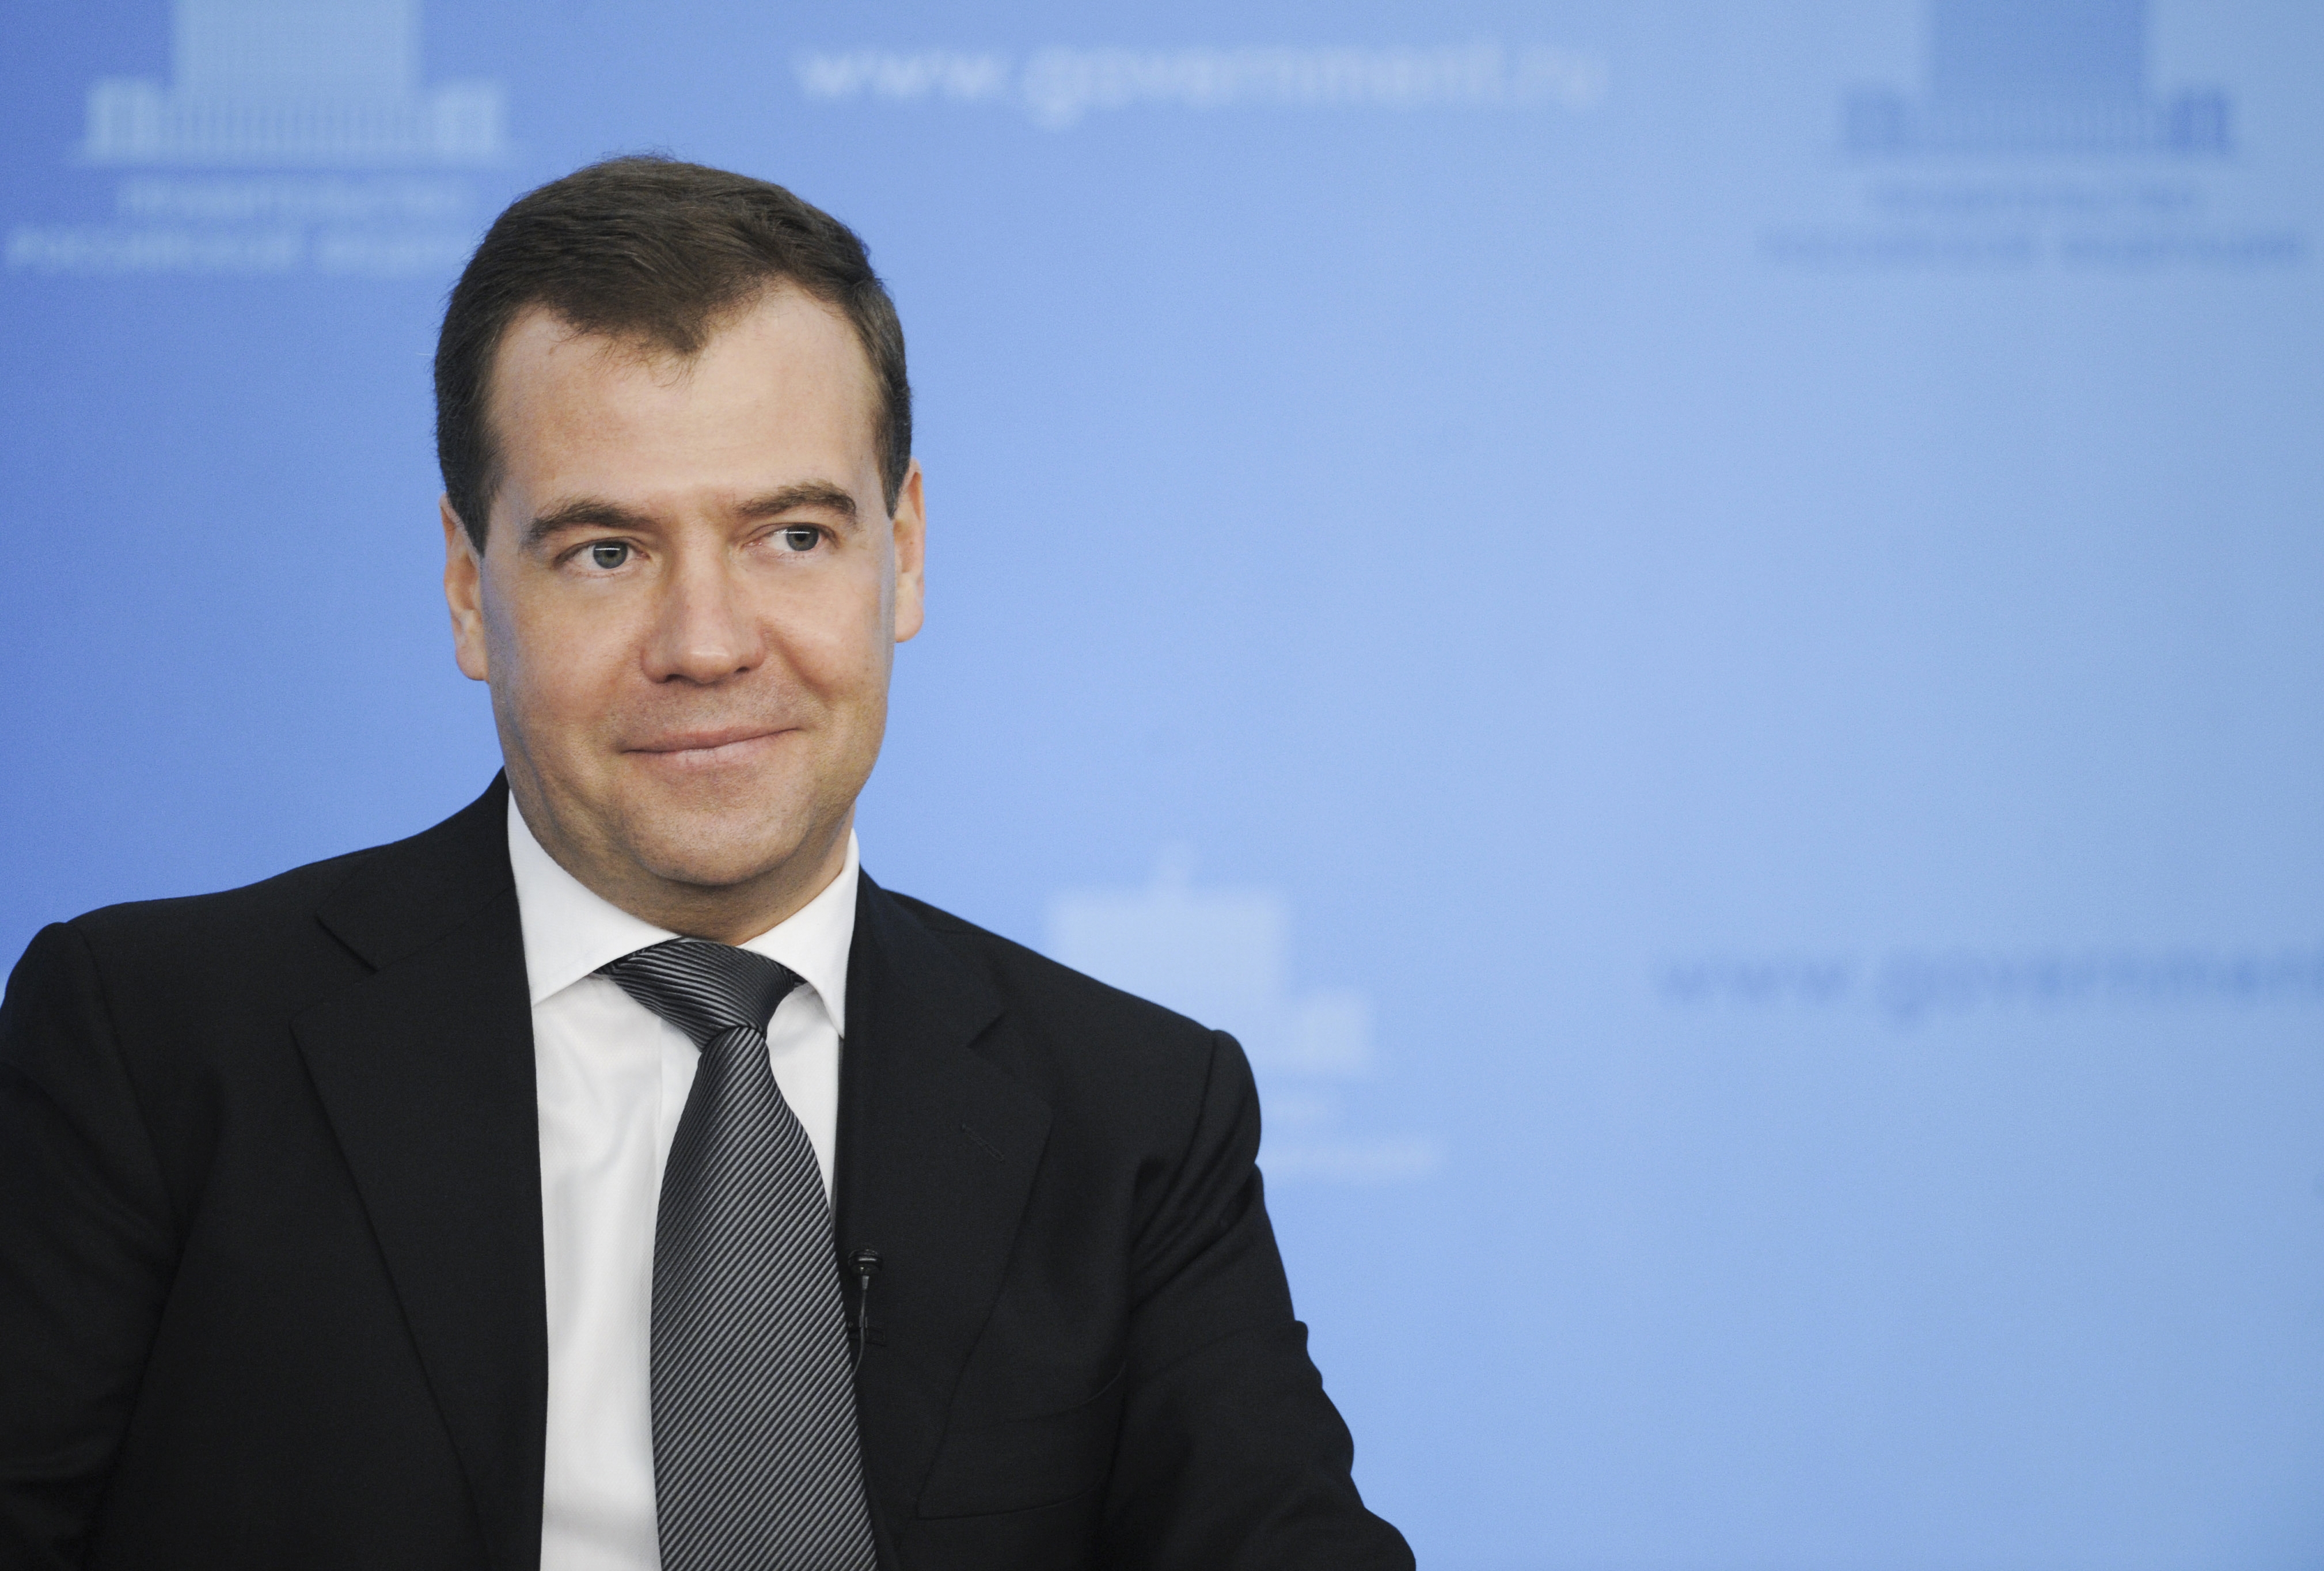 Д. Медведев [government.ru]